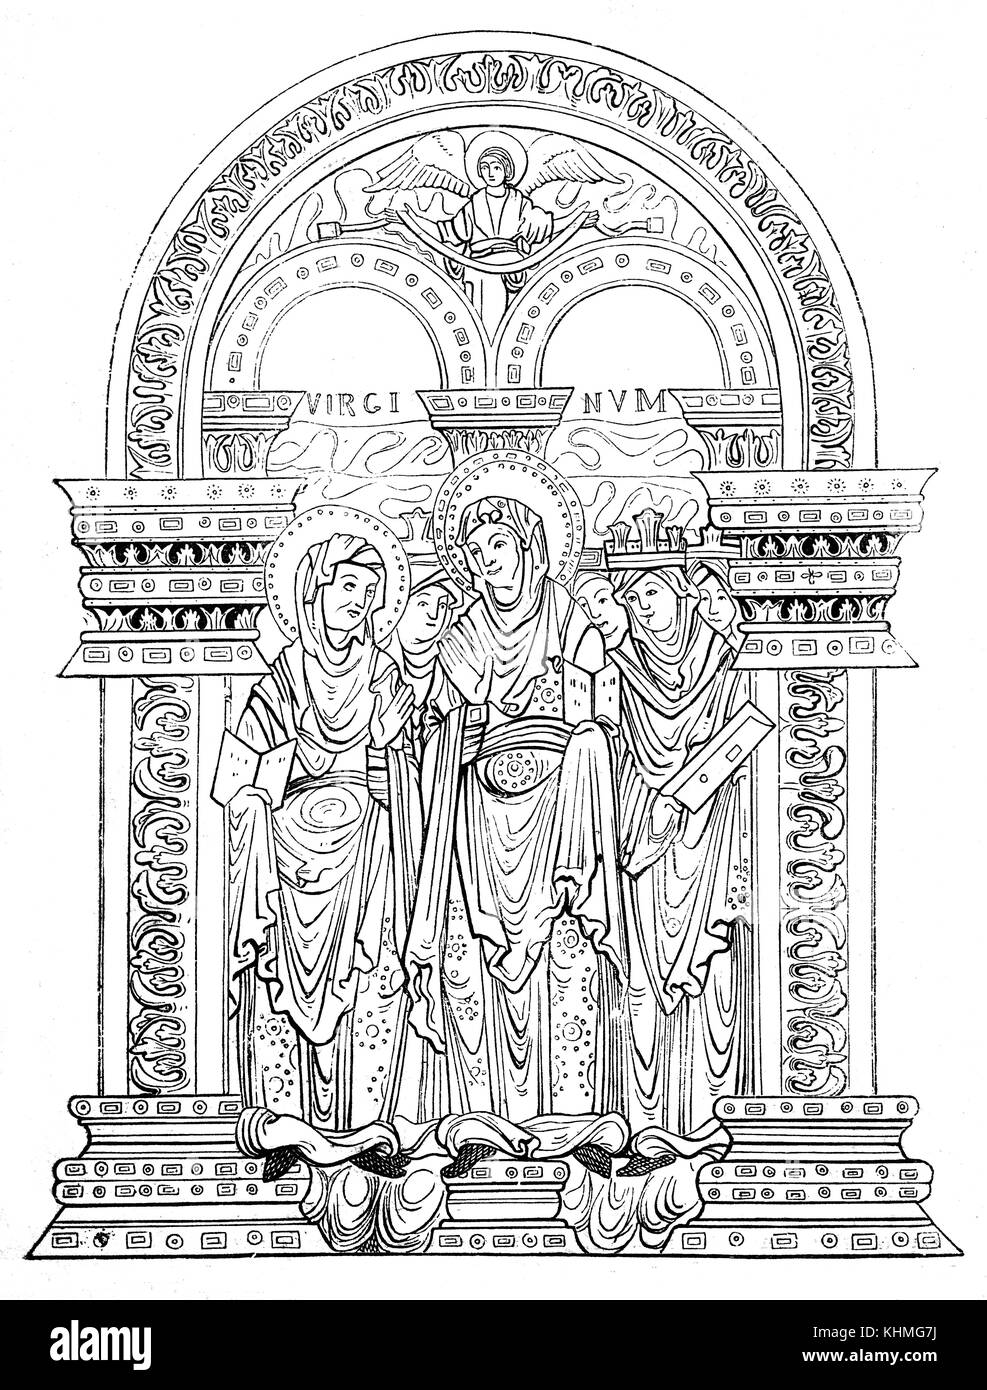 Eine Abbildung der Nonnen von der alten "Benedictional des Siehe von Winchester 'produziert im Auftrag des Leiters der Sehen, Aethelwolda. Die illuminationen gezeichnet von einem Mönch namens Godemann, der später Abt von Thorney. 10. Jahrhundert Angelsächsische Hampshire, England Stockfoto